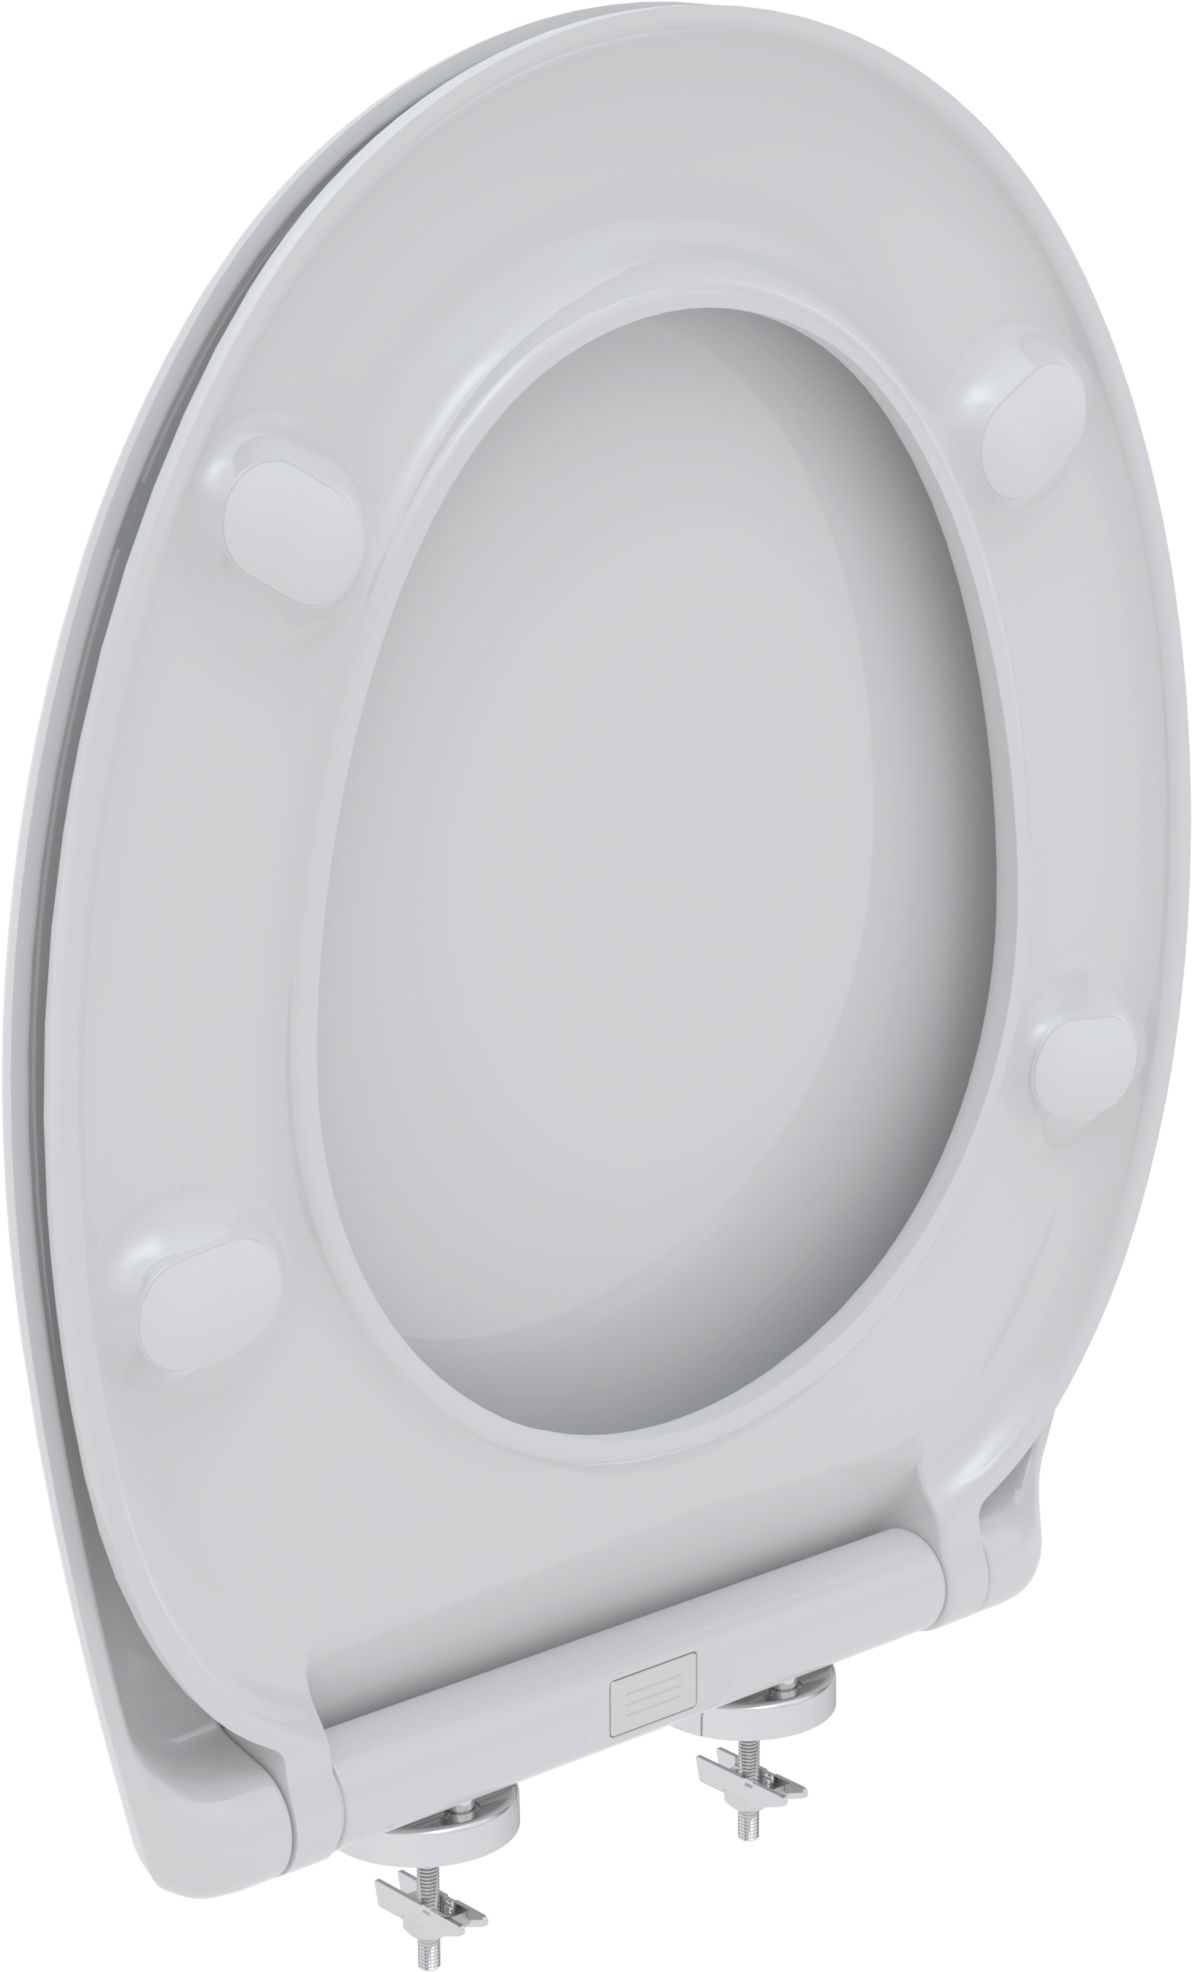 Toilet seat Virgo S, white